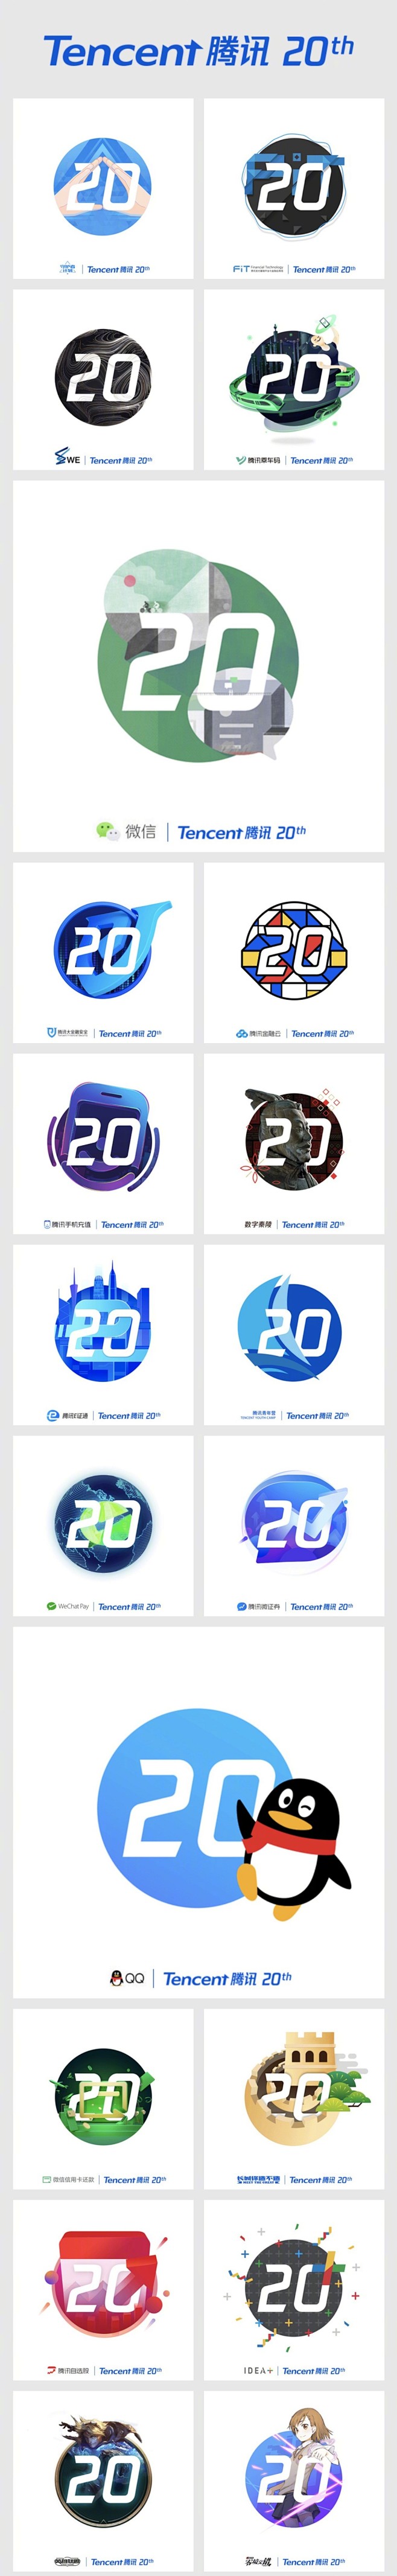 腾讯 20 周年品牌标志延展设计